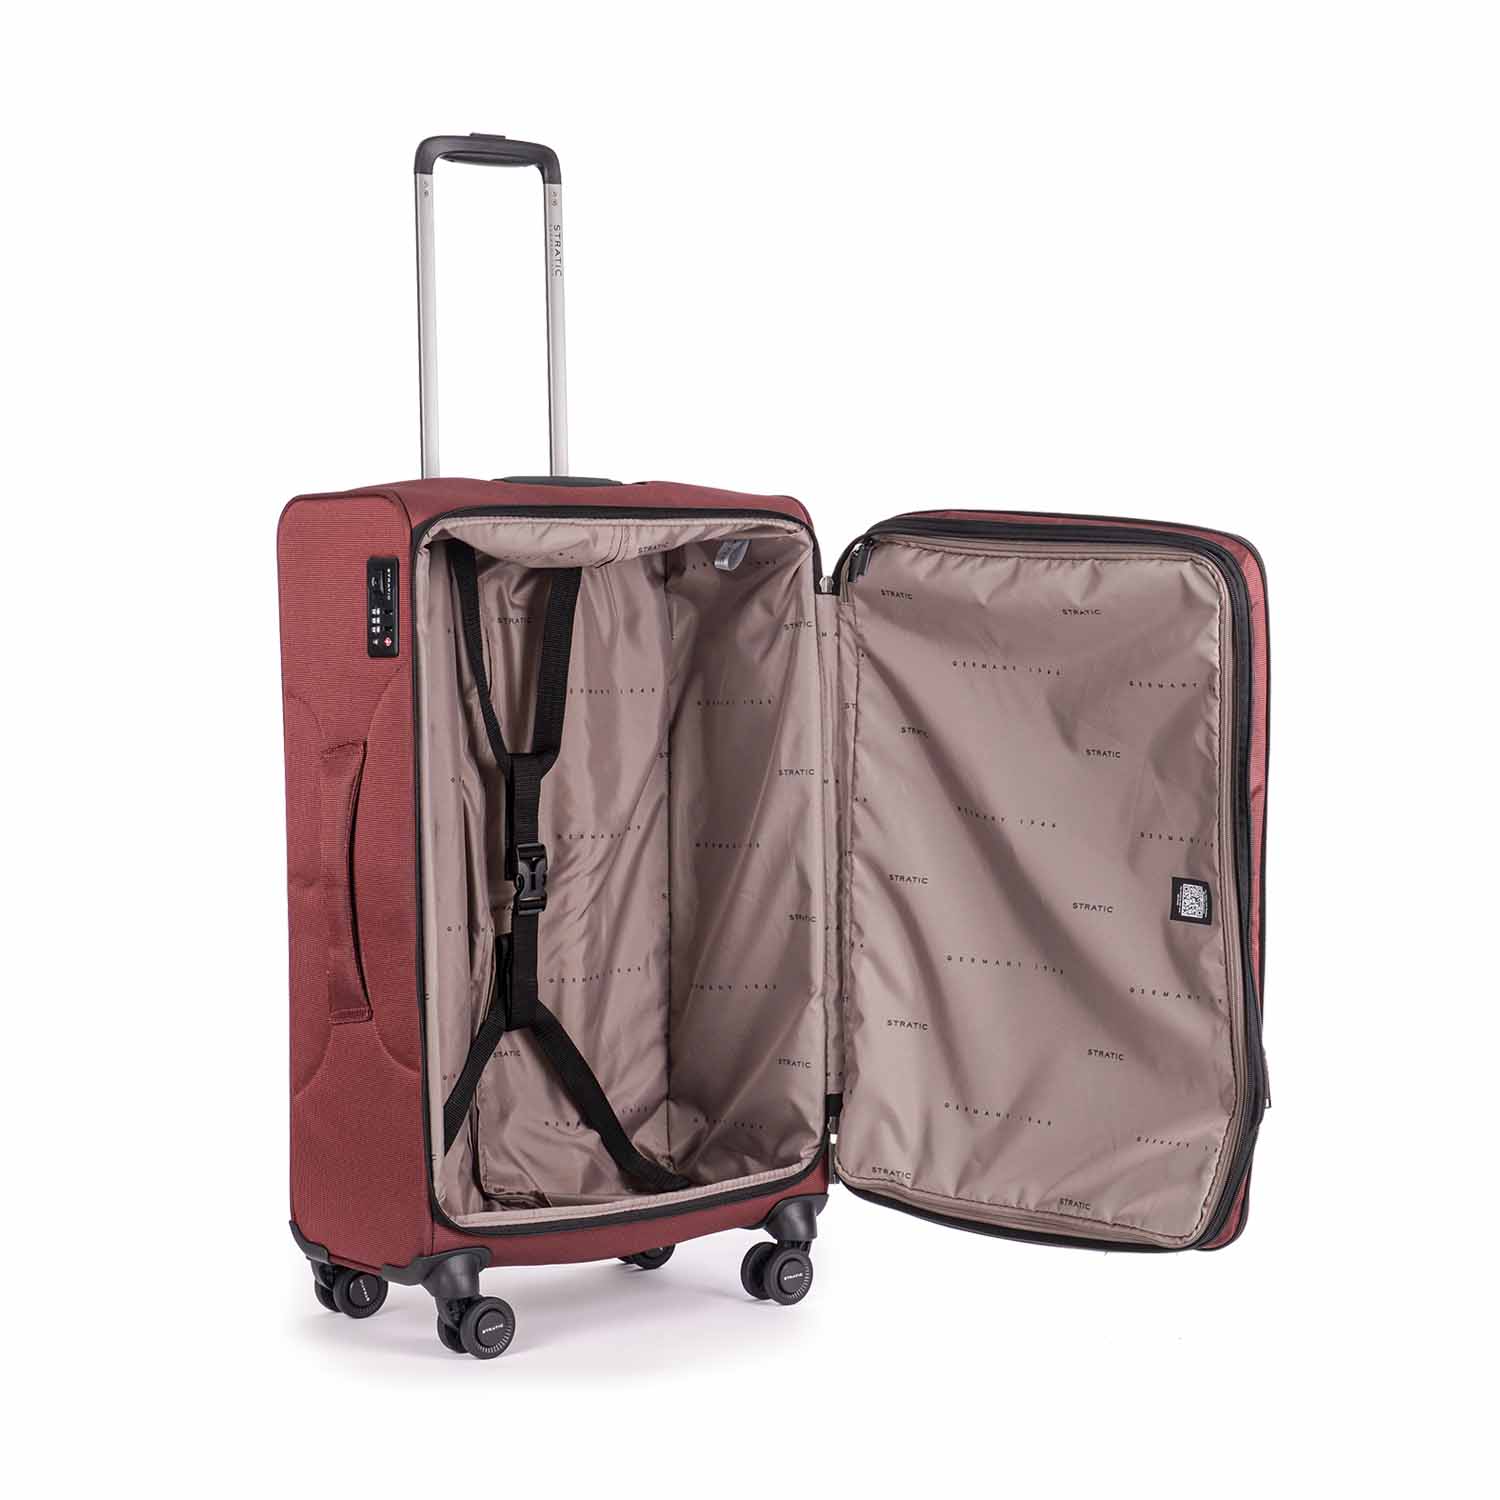 Stratic Bendigo Light + Koffer M redwine | jetzt online kaufen auf Koffer.de  ✓